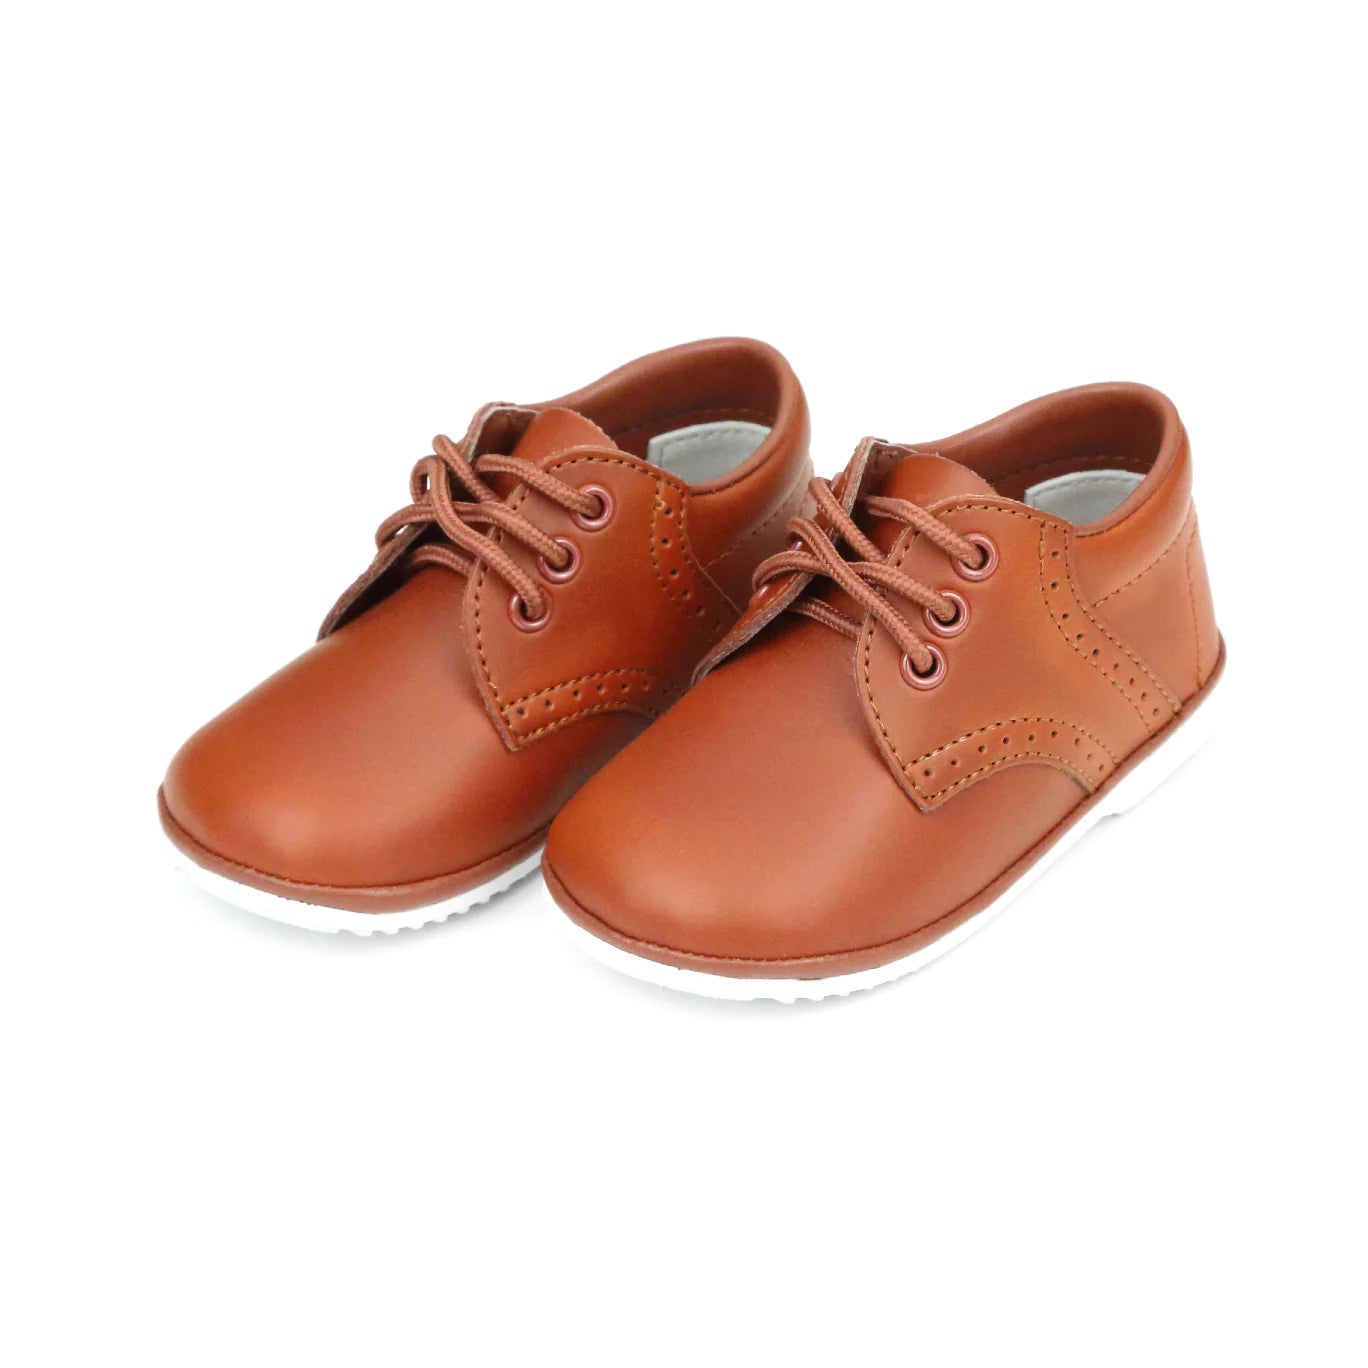 L'AMOUR James Leather Lace Up Shoe (Baby) - Cognac